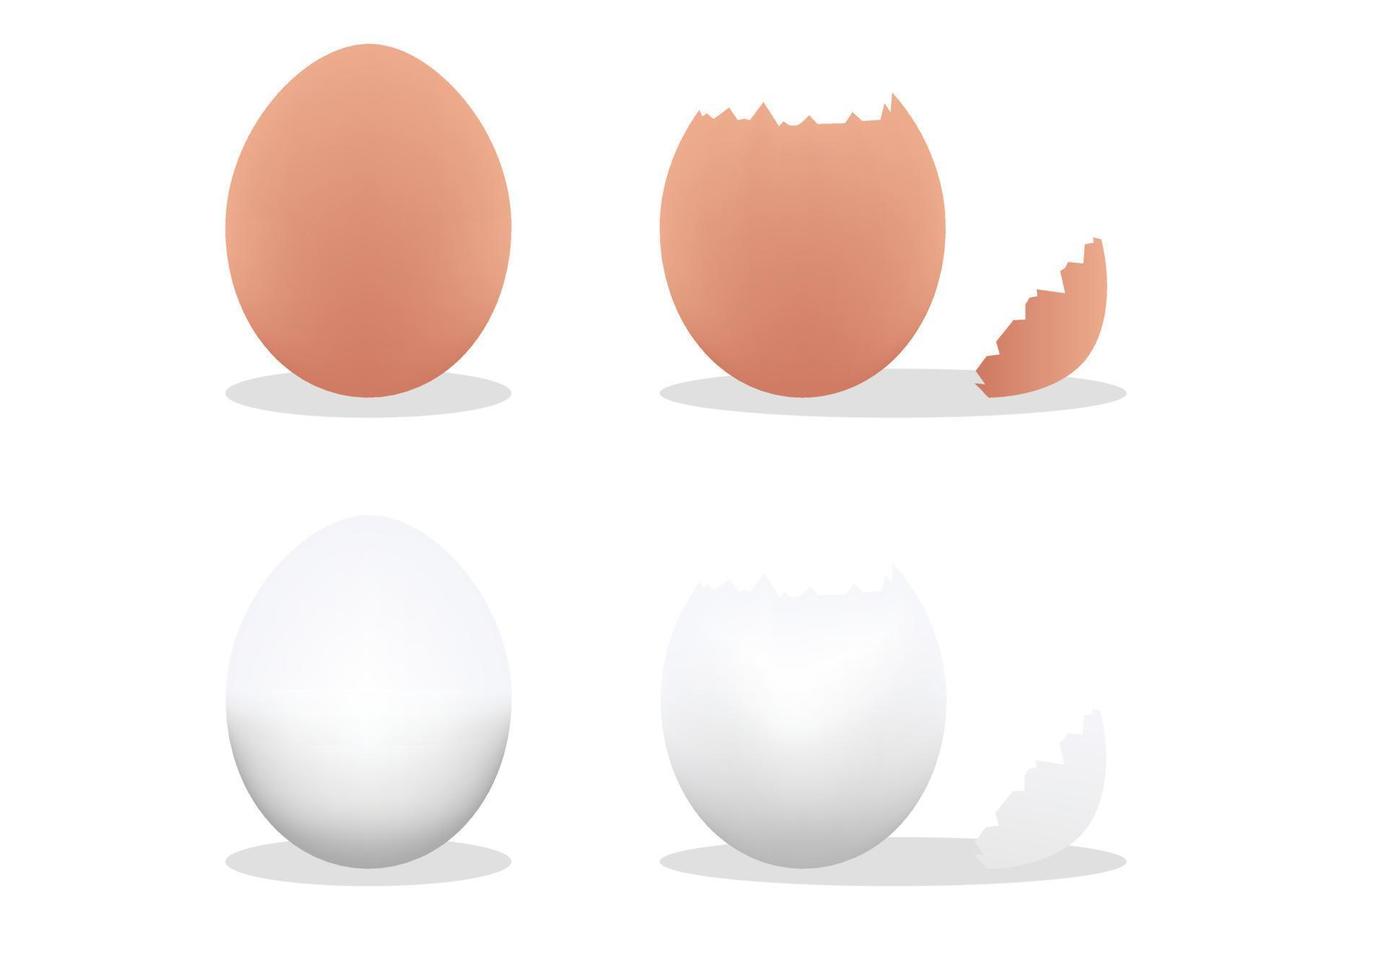 Eier. Ei, Eier, zerbrochenes Ei. Vektor-Illustration von Eiern auf weißem Hintergrund vektor